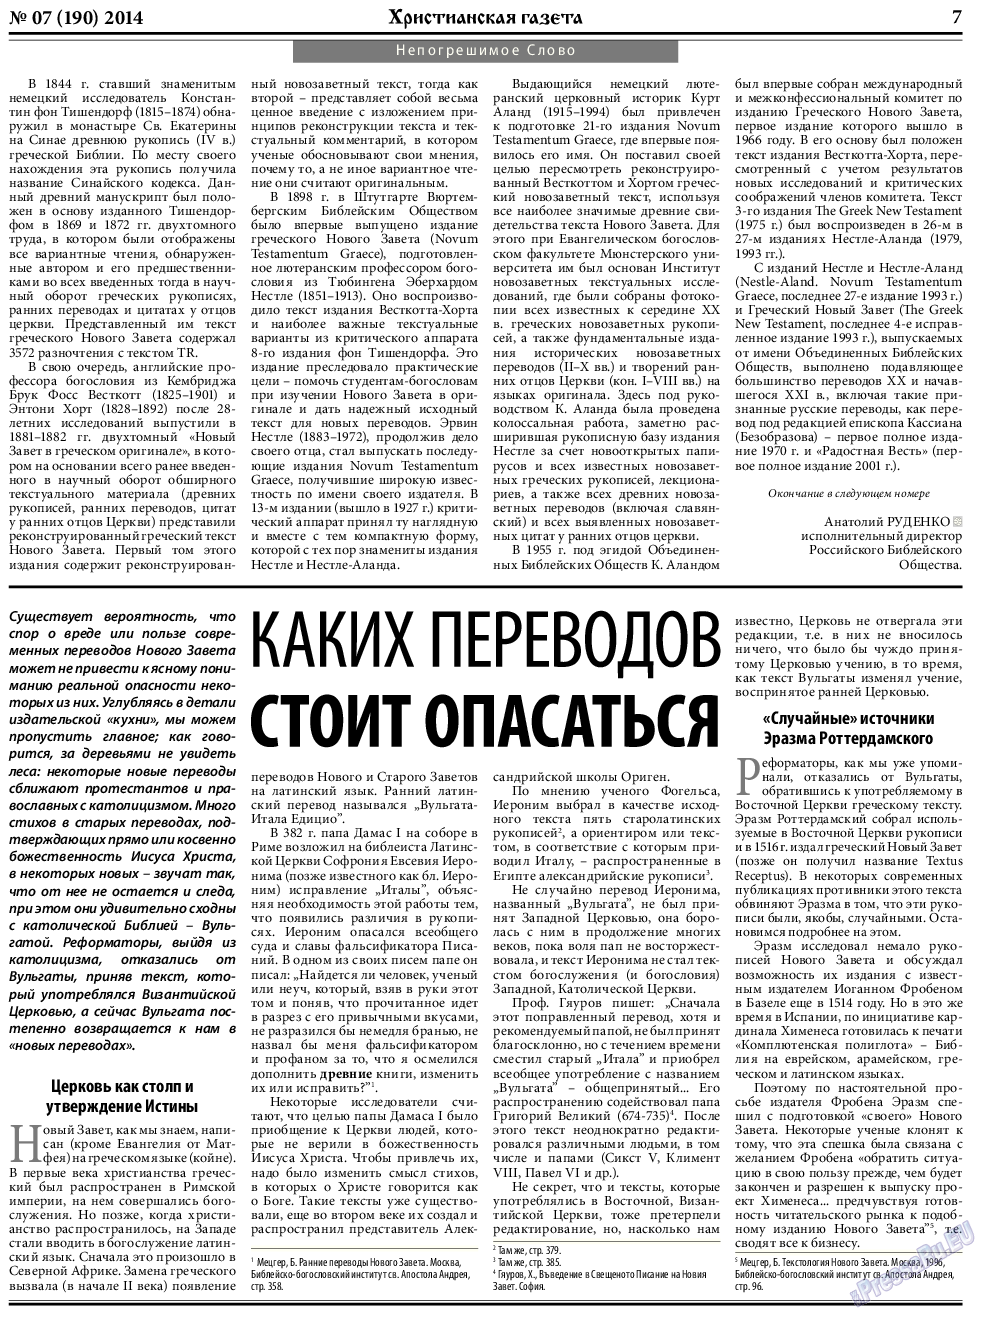 Христианская газета, газета. 2014 №7 стр.7